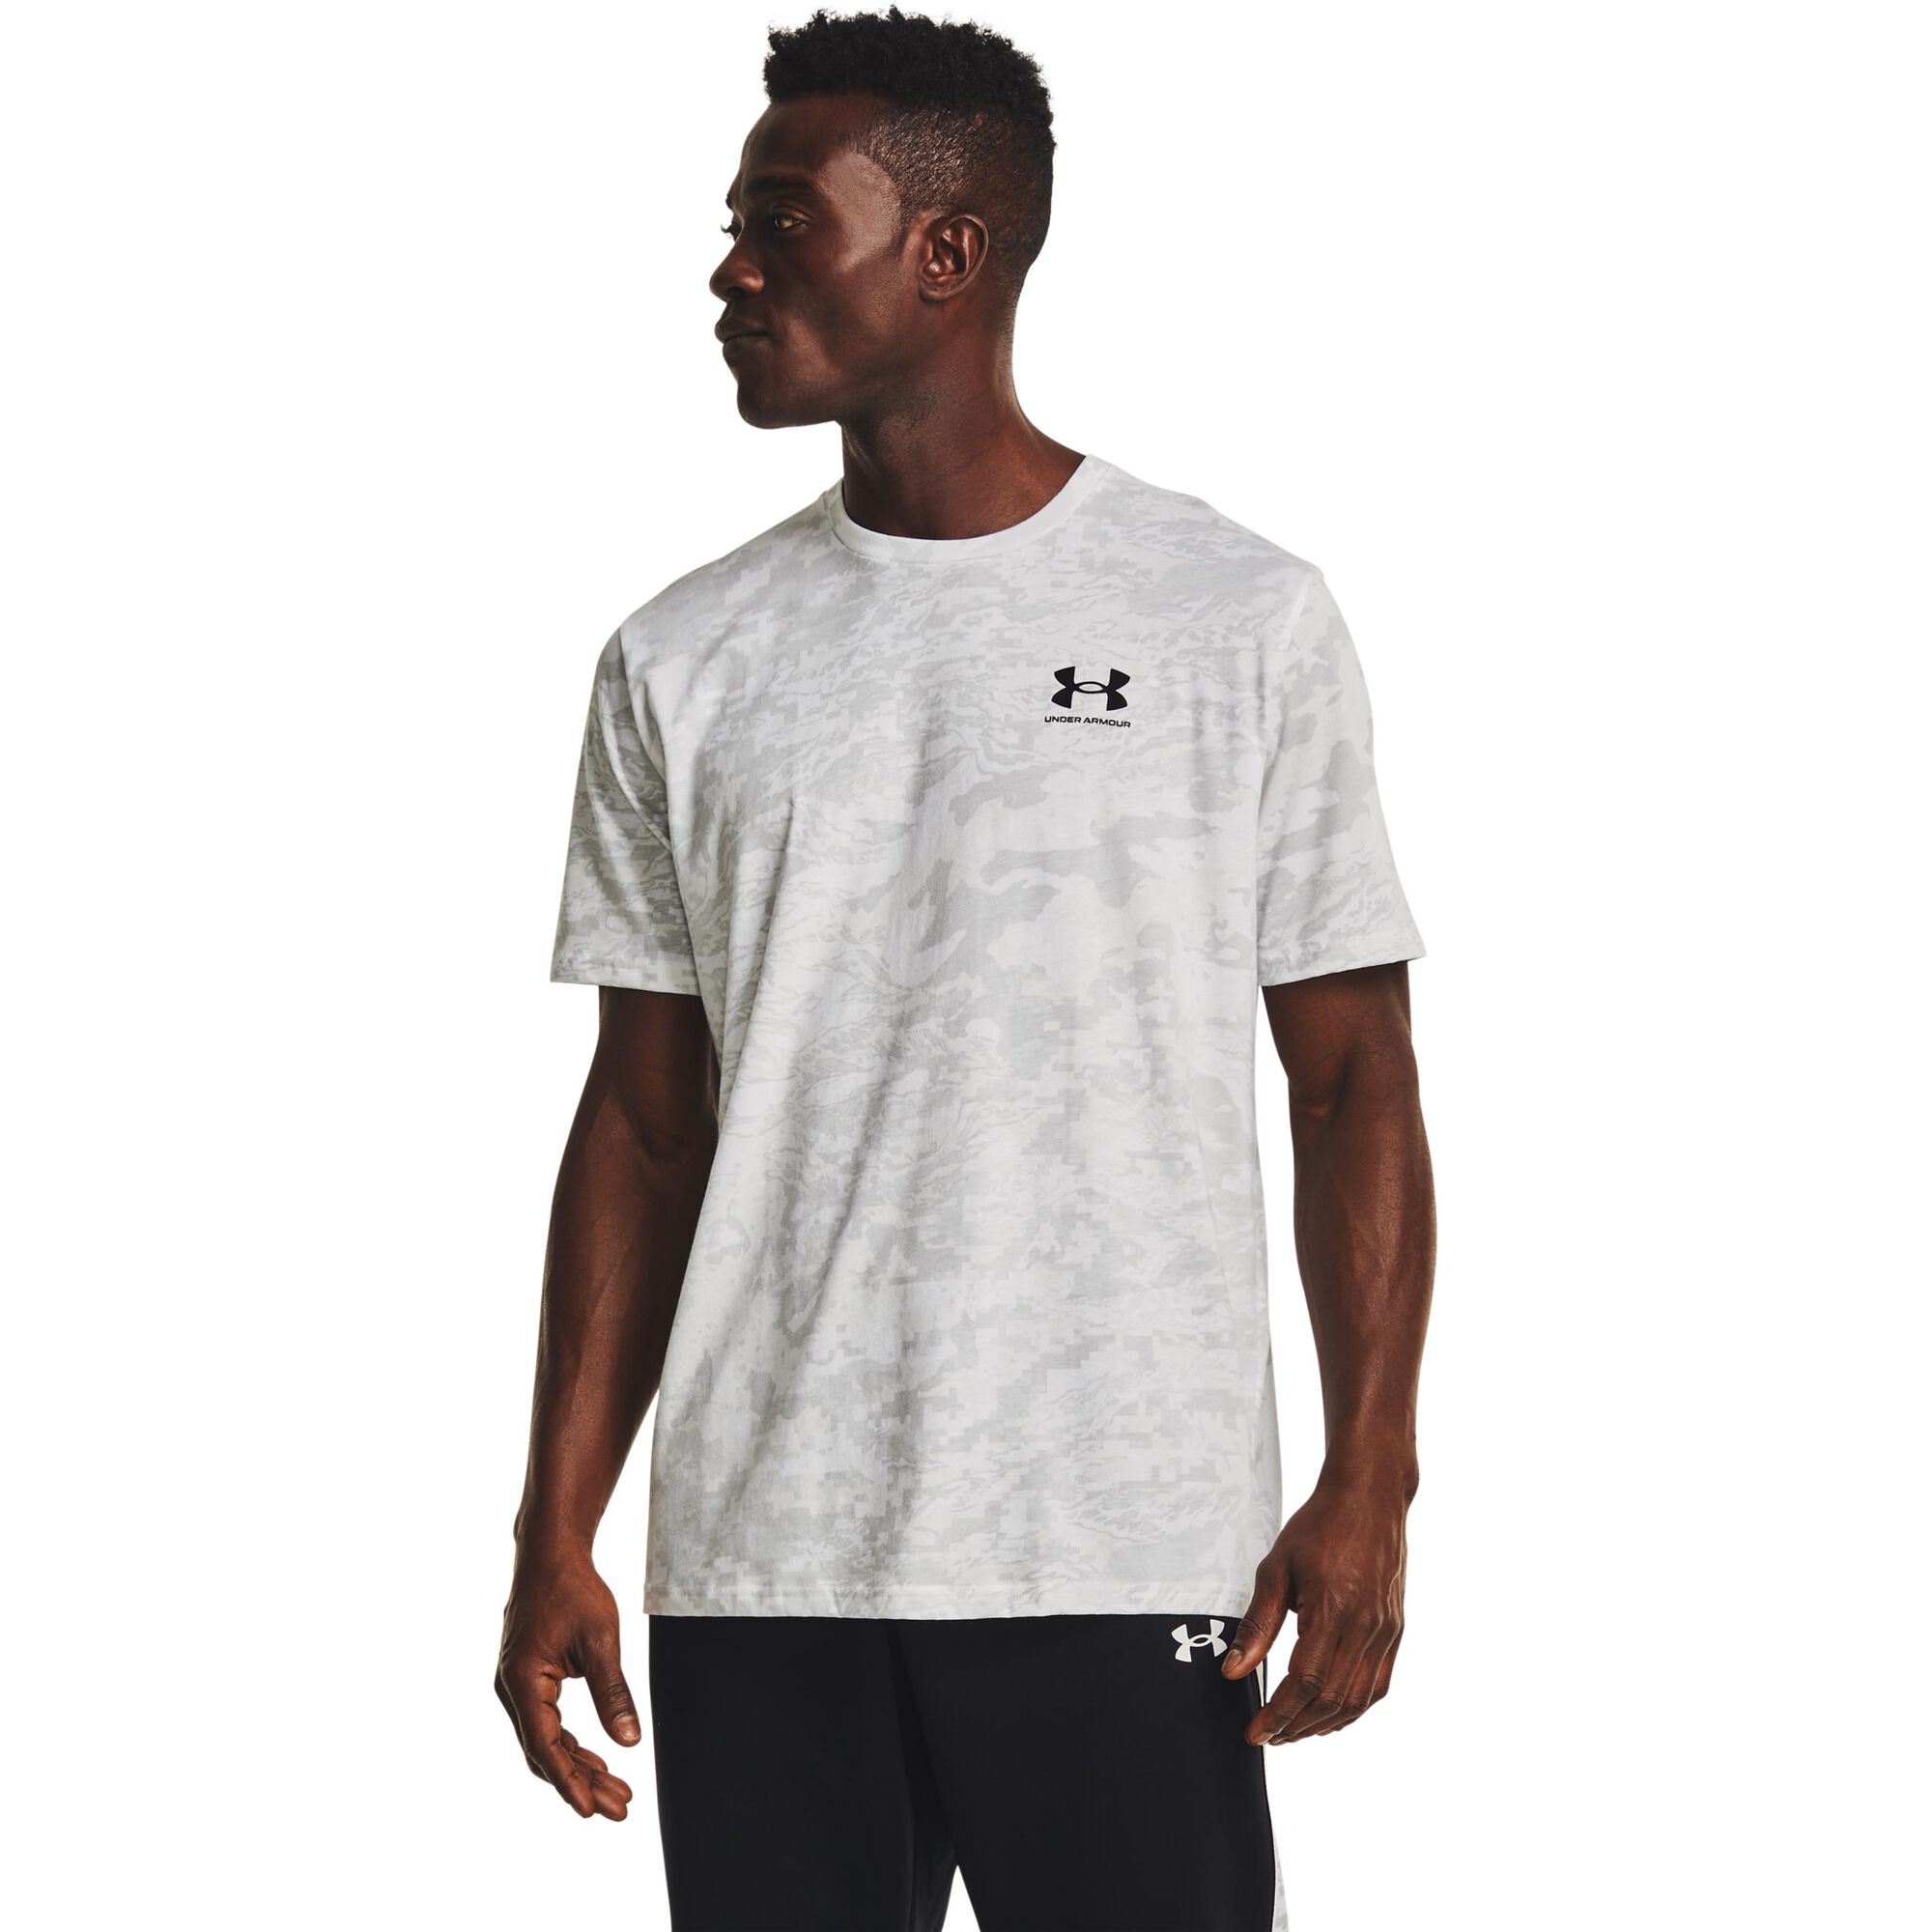 Buy Under Armour ABC Camo T-Shirt Men White online | Tennis Point COM